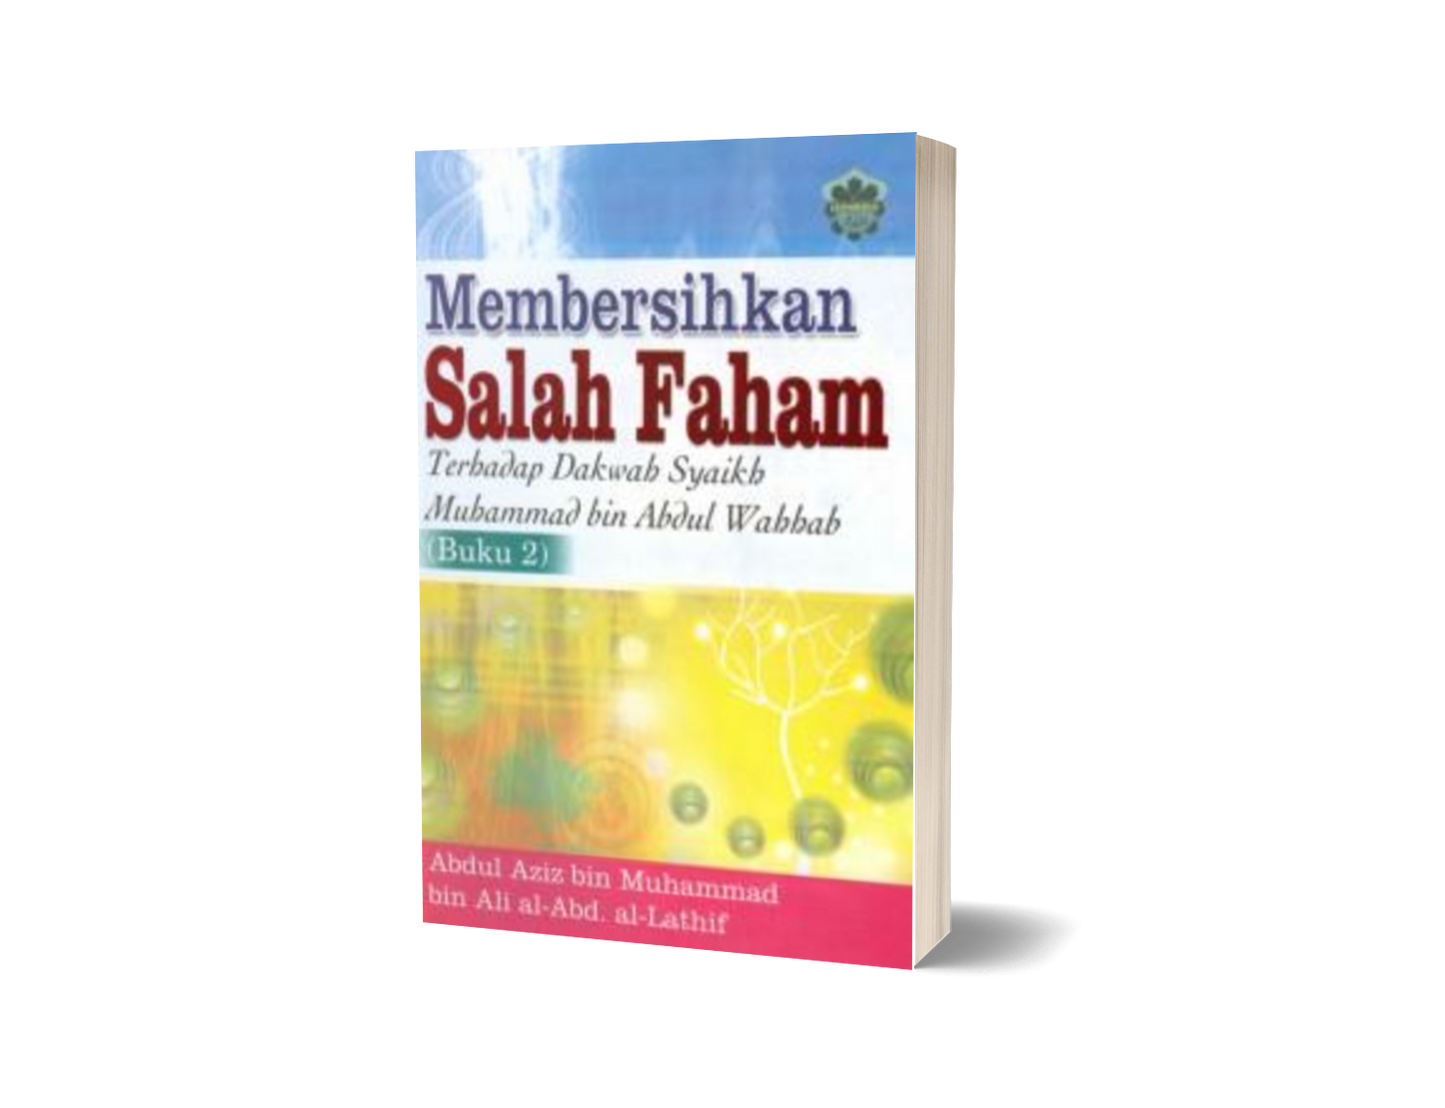 Membersihkan Salah Faham Terhadap Dakwah Syaikh Muhammad Bin Abdul Wahhab (Buku 2)